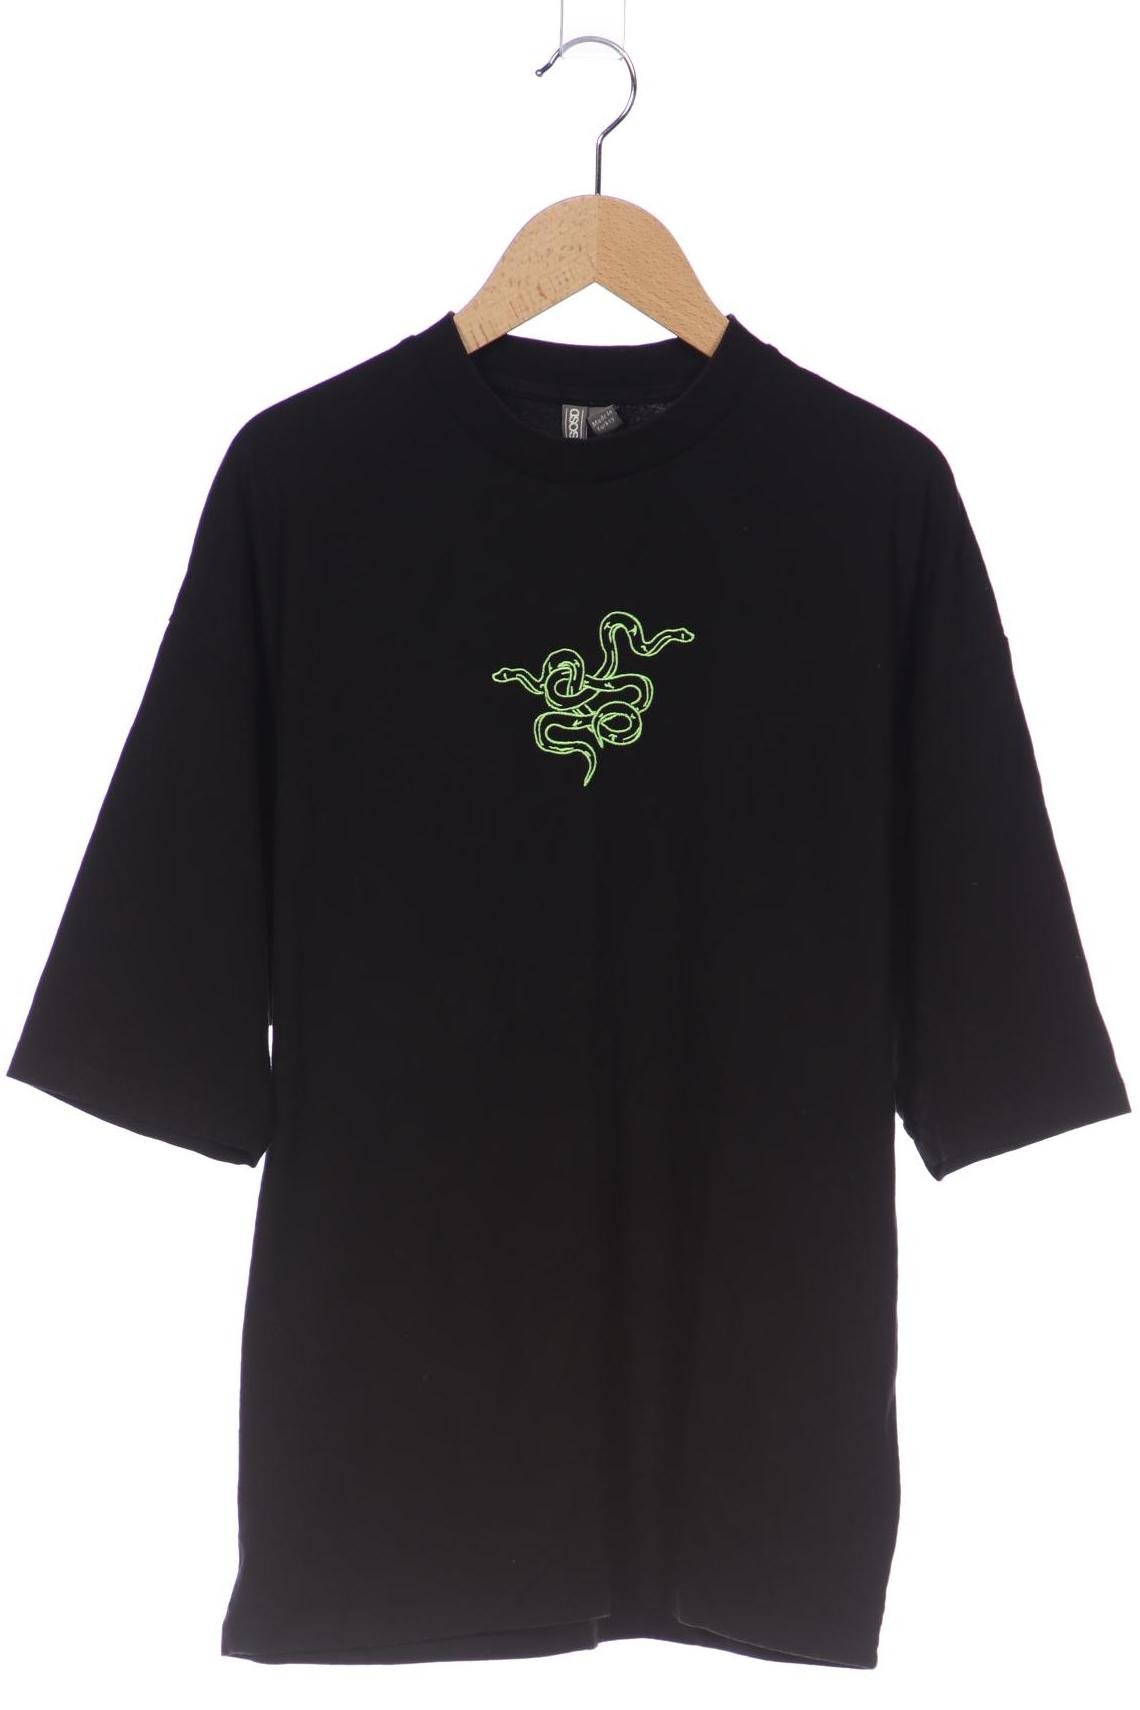 asos Herren T-Shirt, schwarz, Gr. 42 von asos